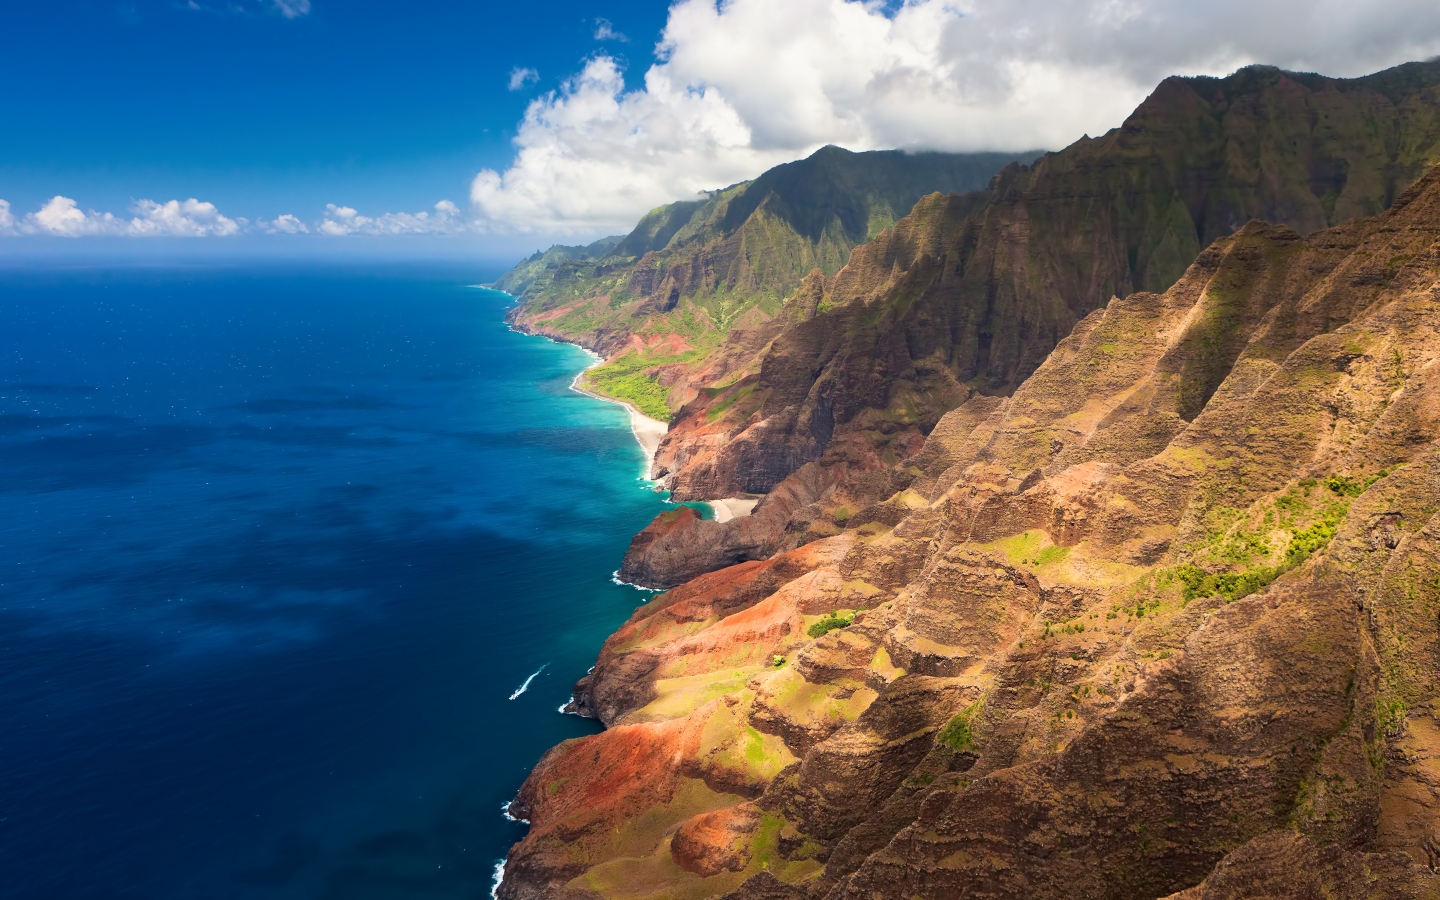 Hawaii Beach for 1440 x 900 widescreen resolution